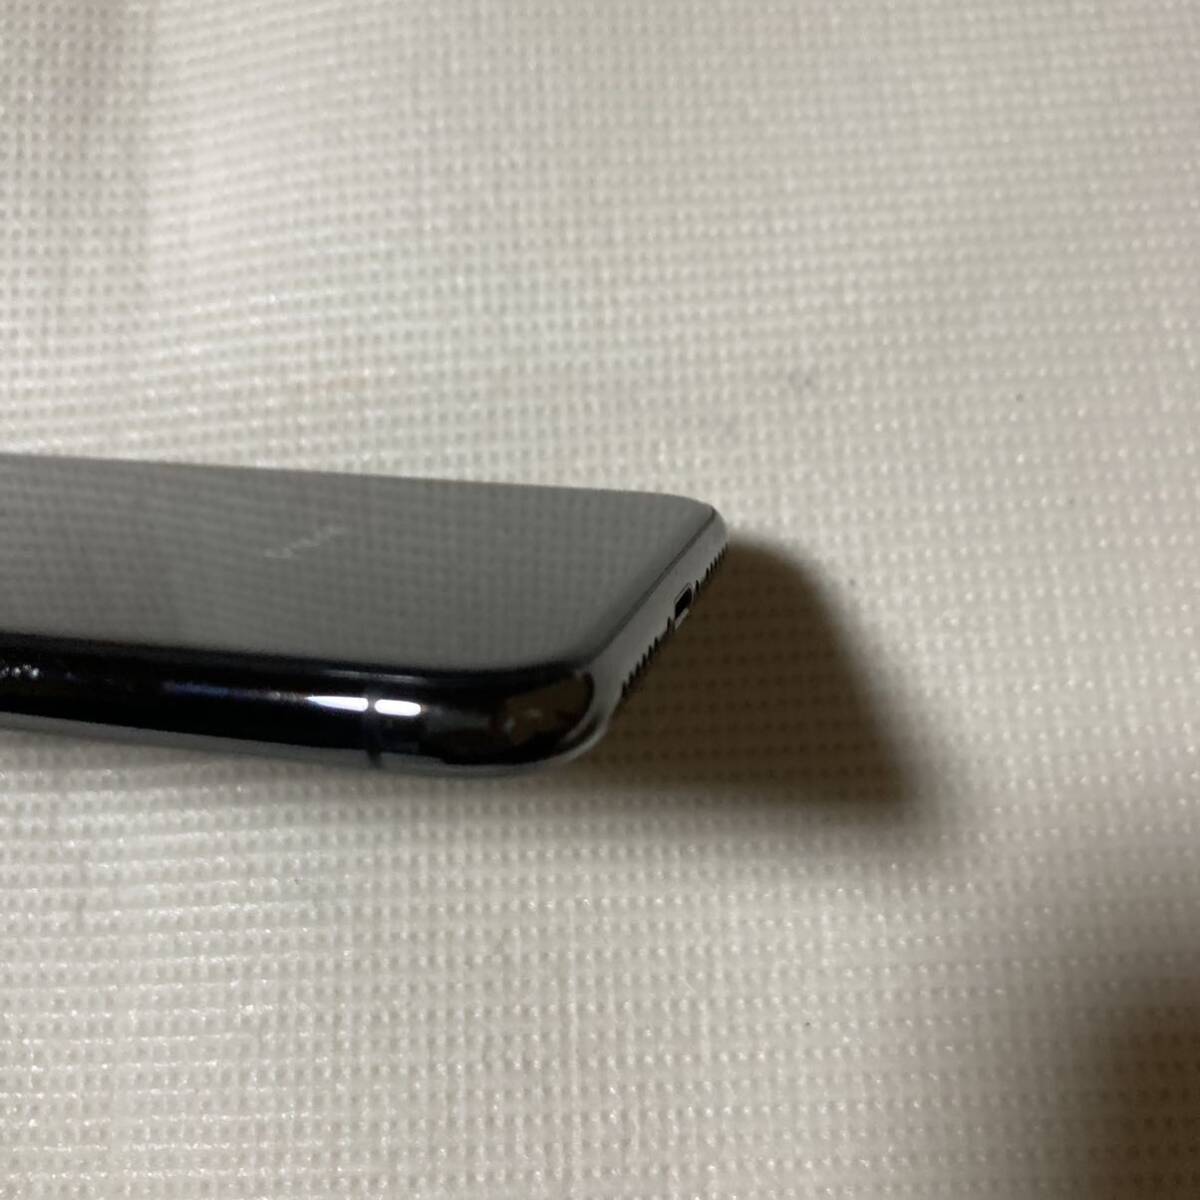 送料無料 SIMフリー iPhoneX 64GB スペースグレー バッテリー最大容量100% SIMロック解除済 付属品 _画像8